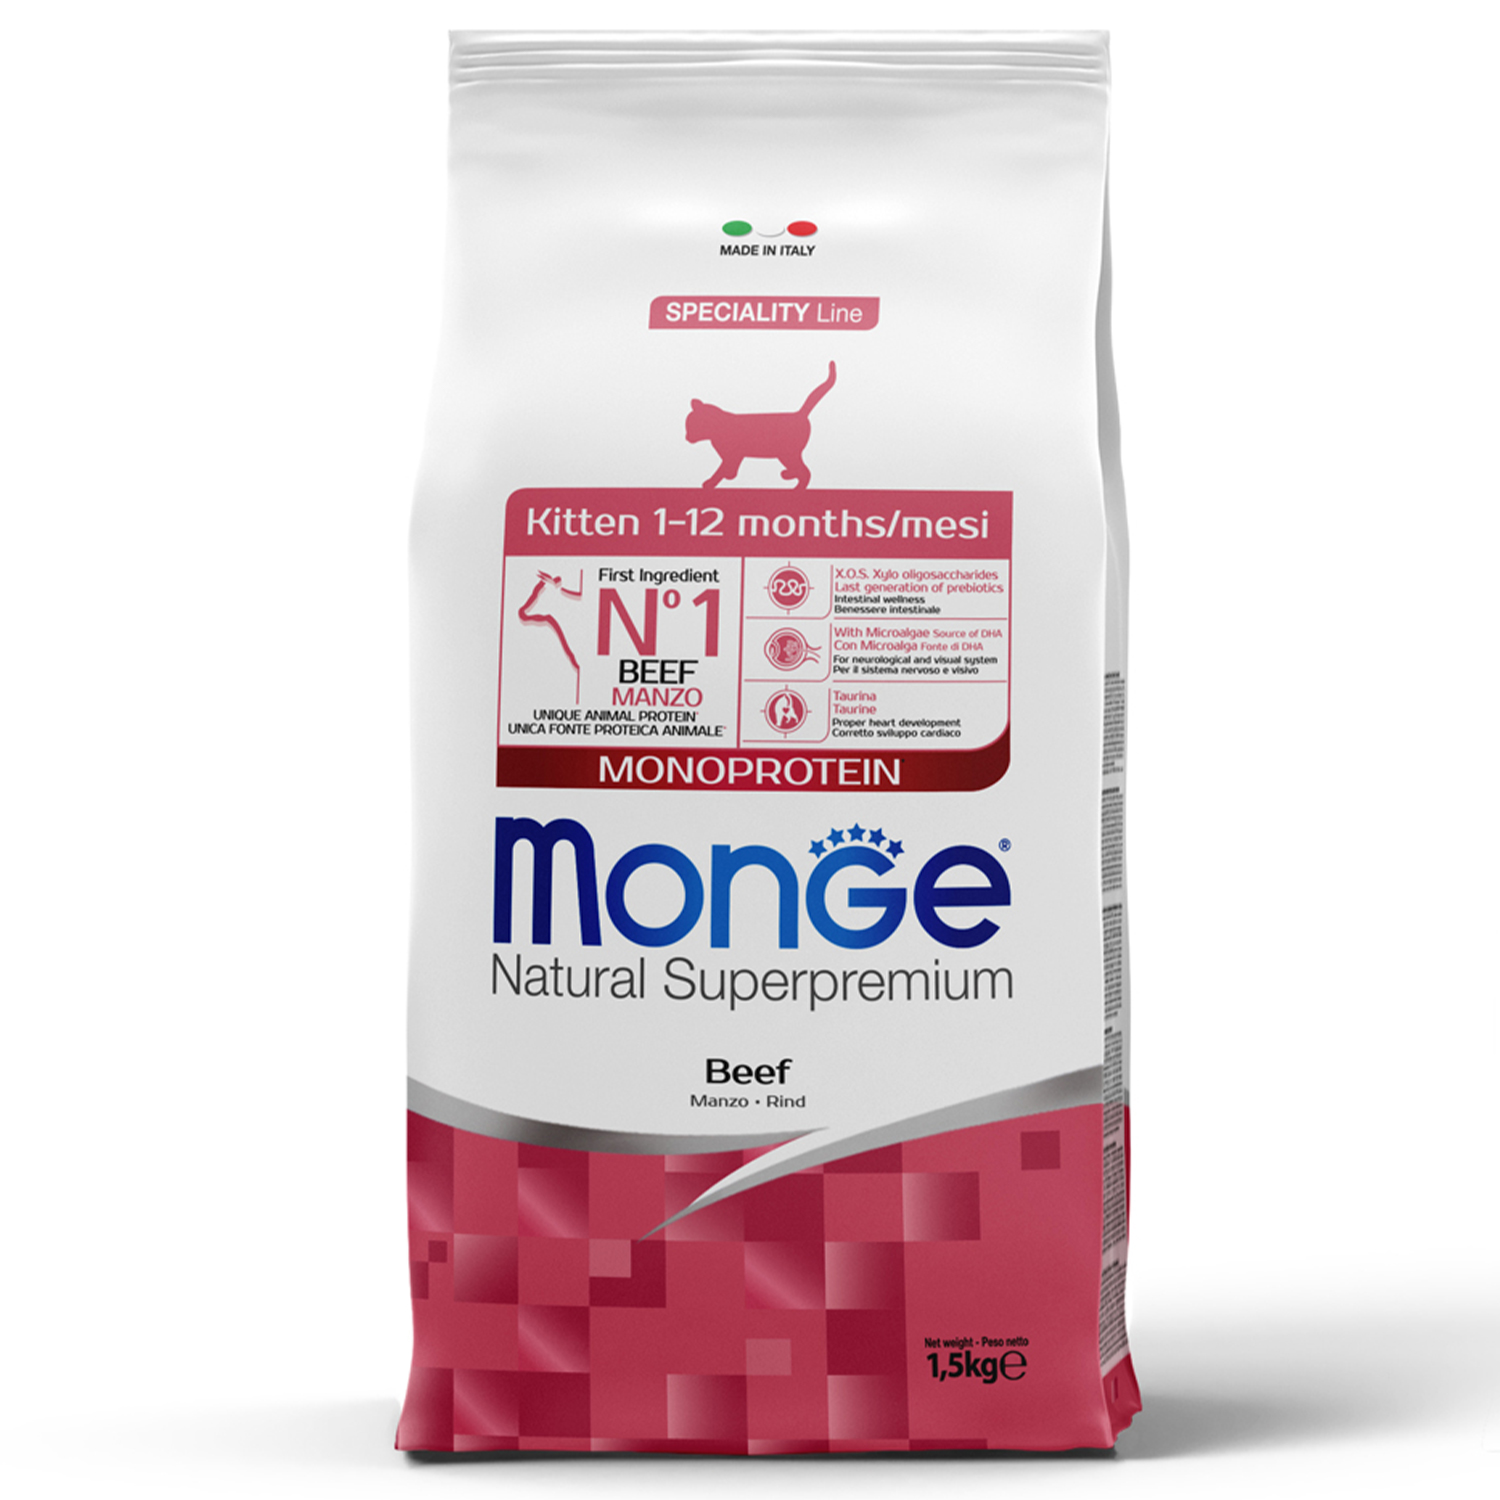 Сухой корм Monge Cat Speciality Line Monoprotein для котят и беременных кошек, из говядины 1,5 кг